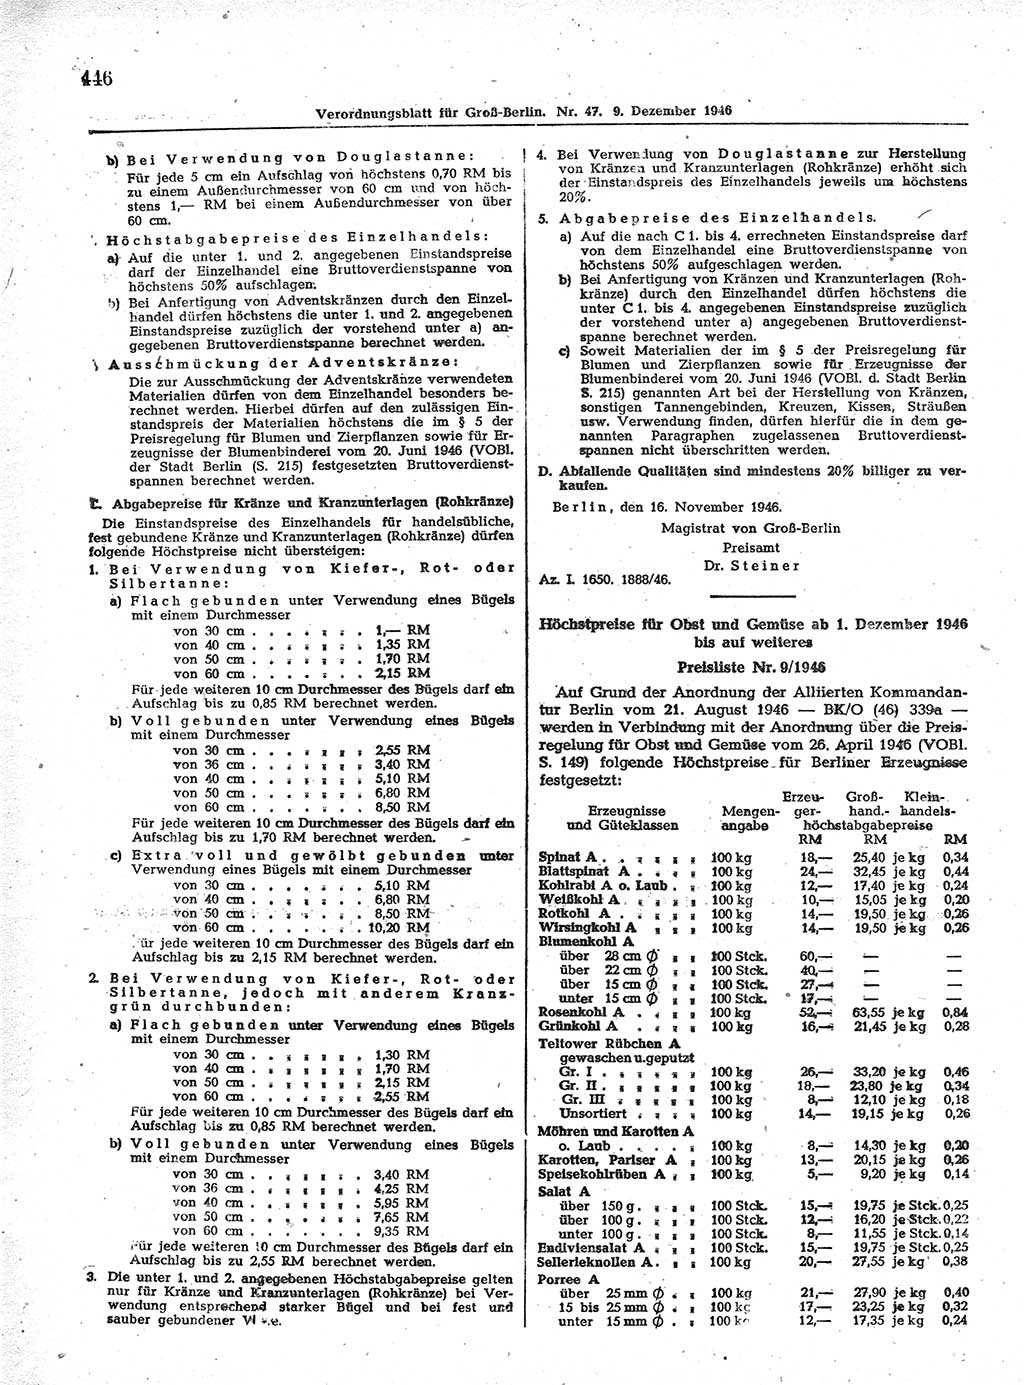 Verordnungsblatt (VOBl.) der Stadt Berlin, für Groß-Berlin 1946, Seite 446 (VOBl. Bln. 1946, S. 446)